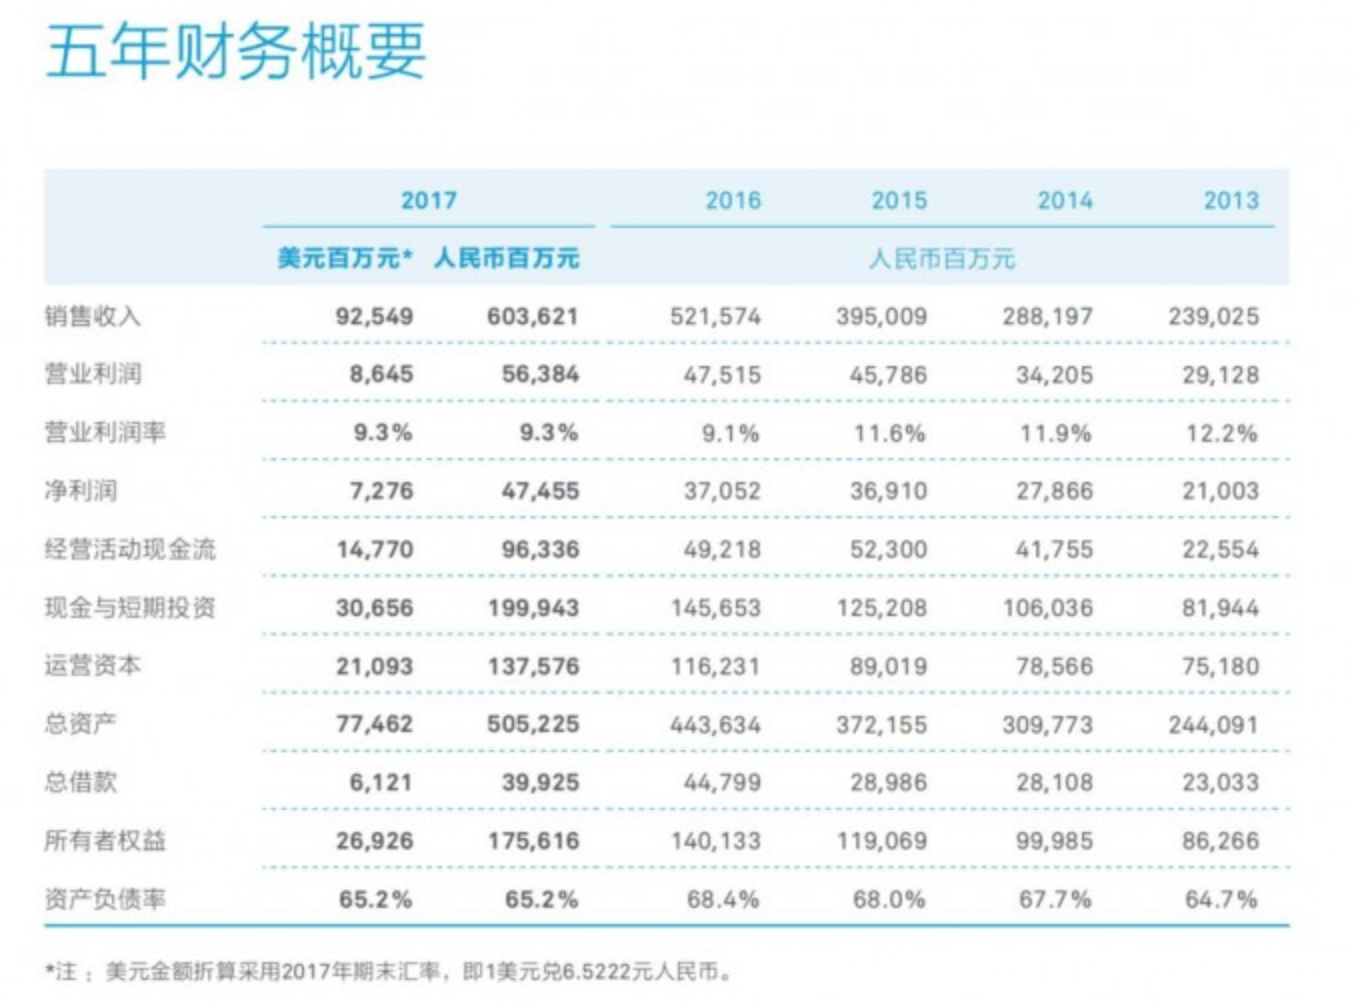 华为2017年报出炉:营收6036亿,同比增长15.7%